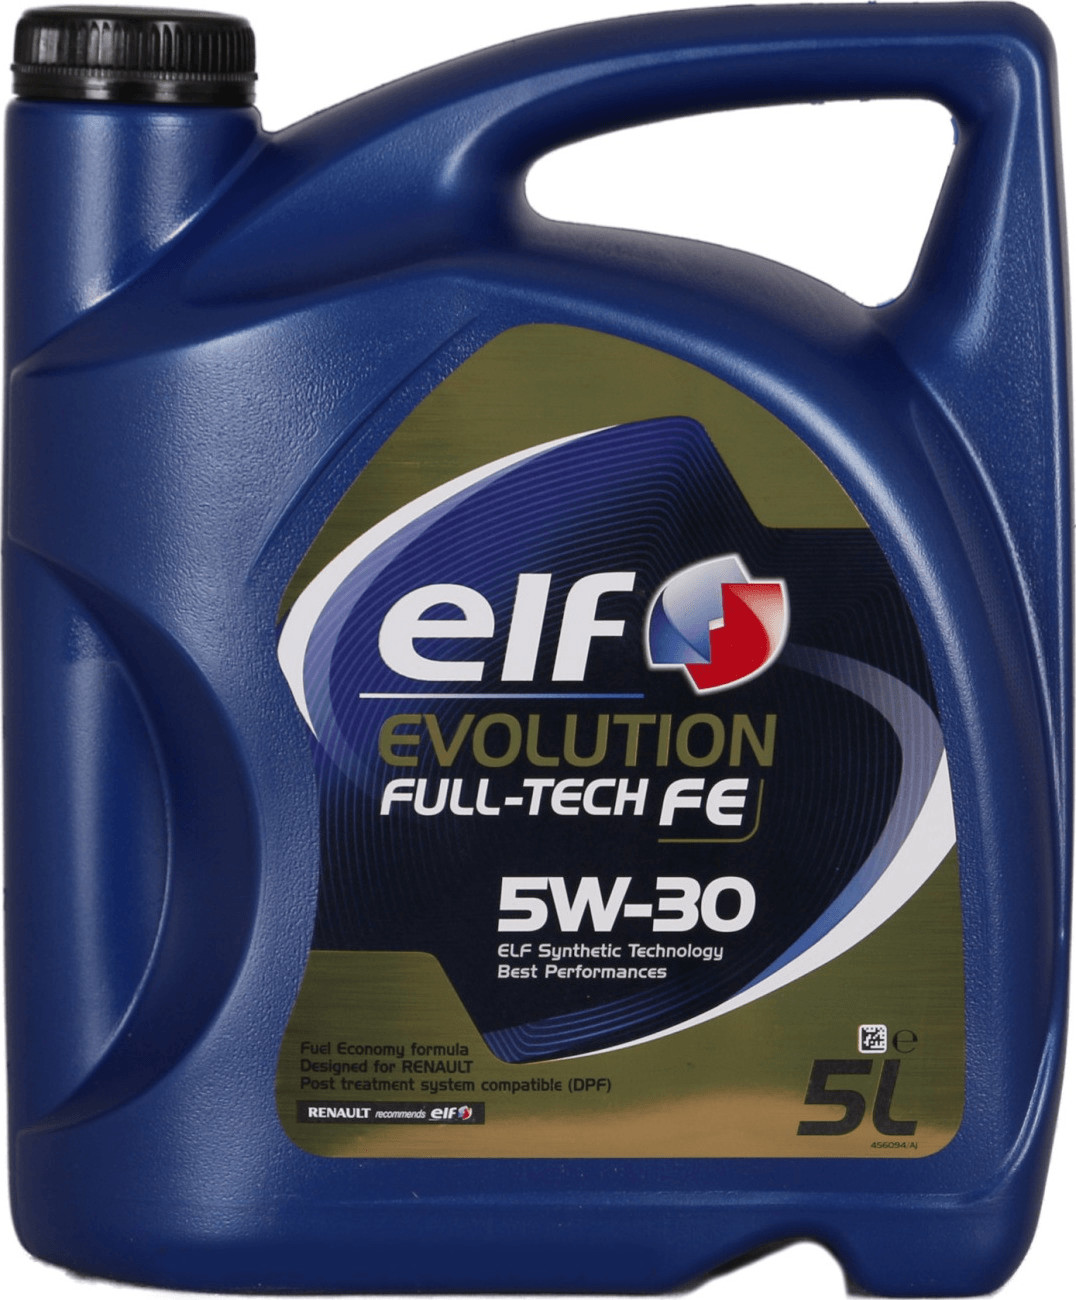 Elf Evolution Full-Tech FE 5W-30 a € 10,49 (oggi)